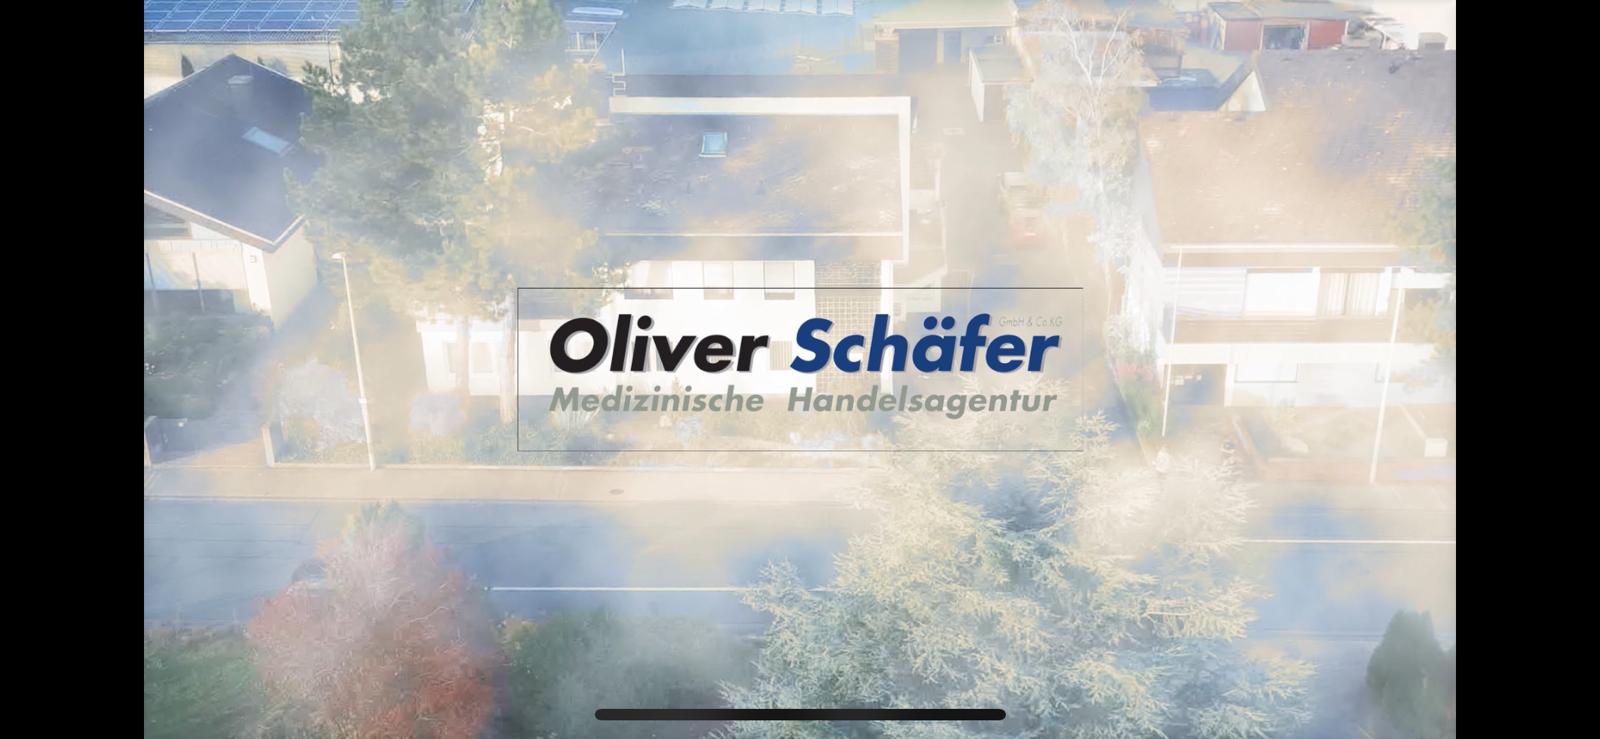 (c) Schaefer-mha.com